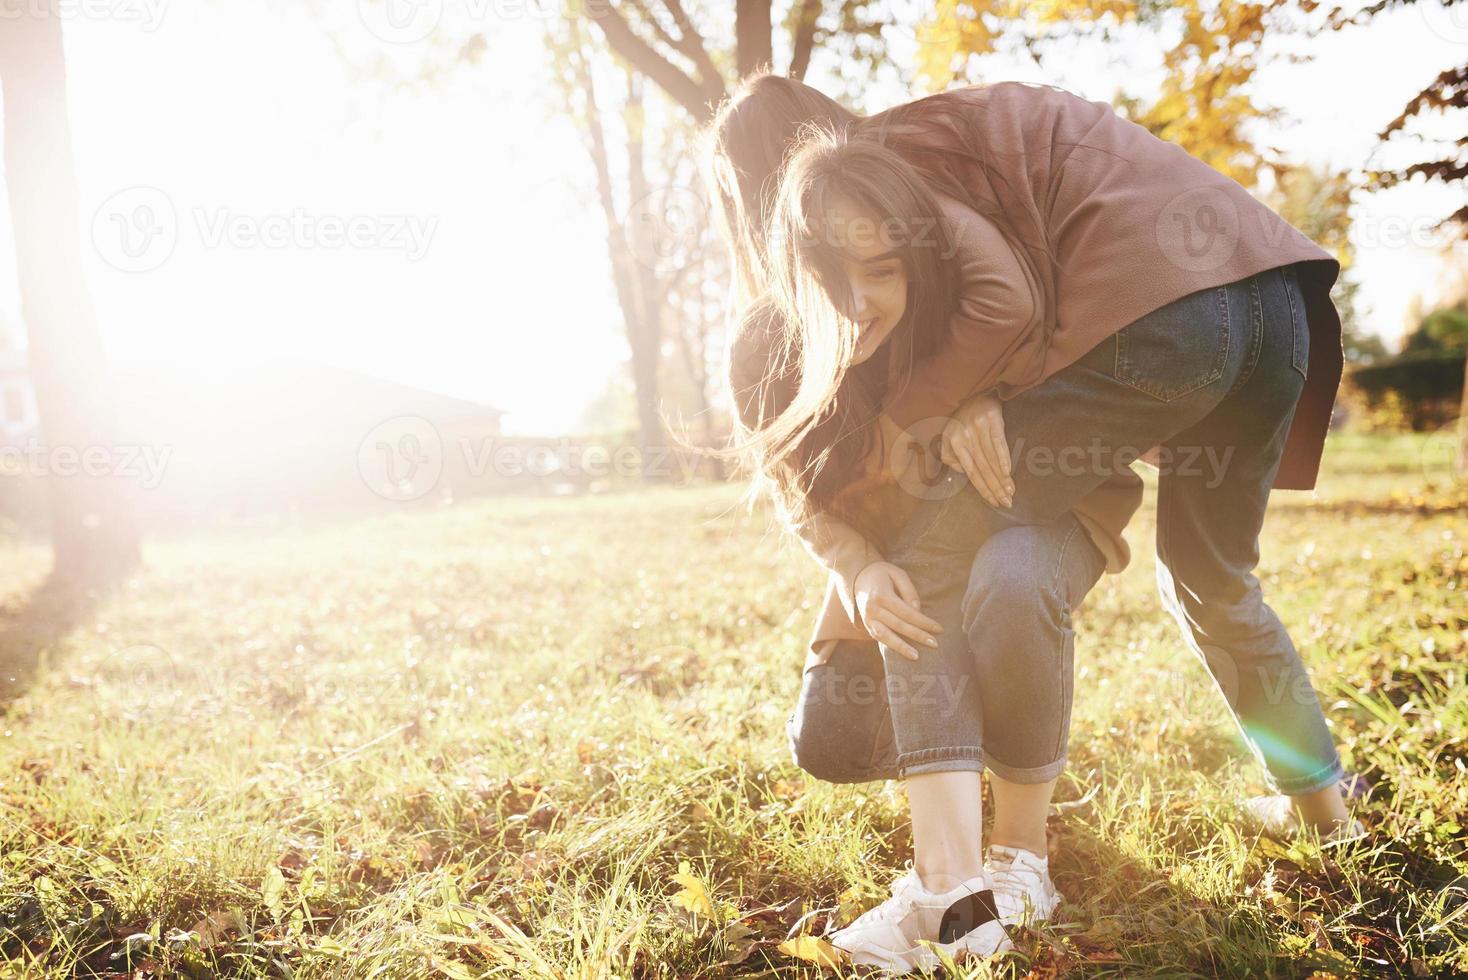 profil latéral de jeunes filles jumelles brunes souriantes s'amusant et luttant dans un parc ensoleillé d'automne sur fond flou photo